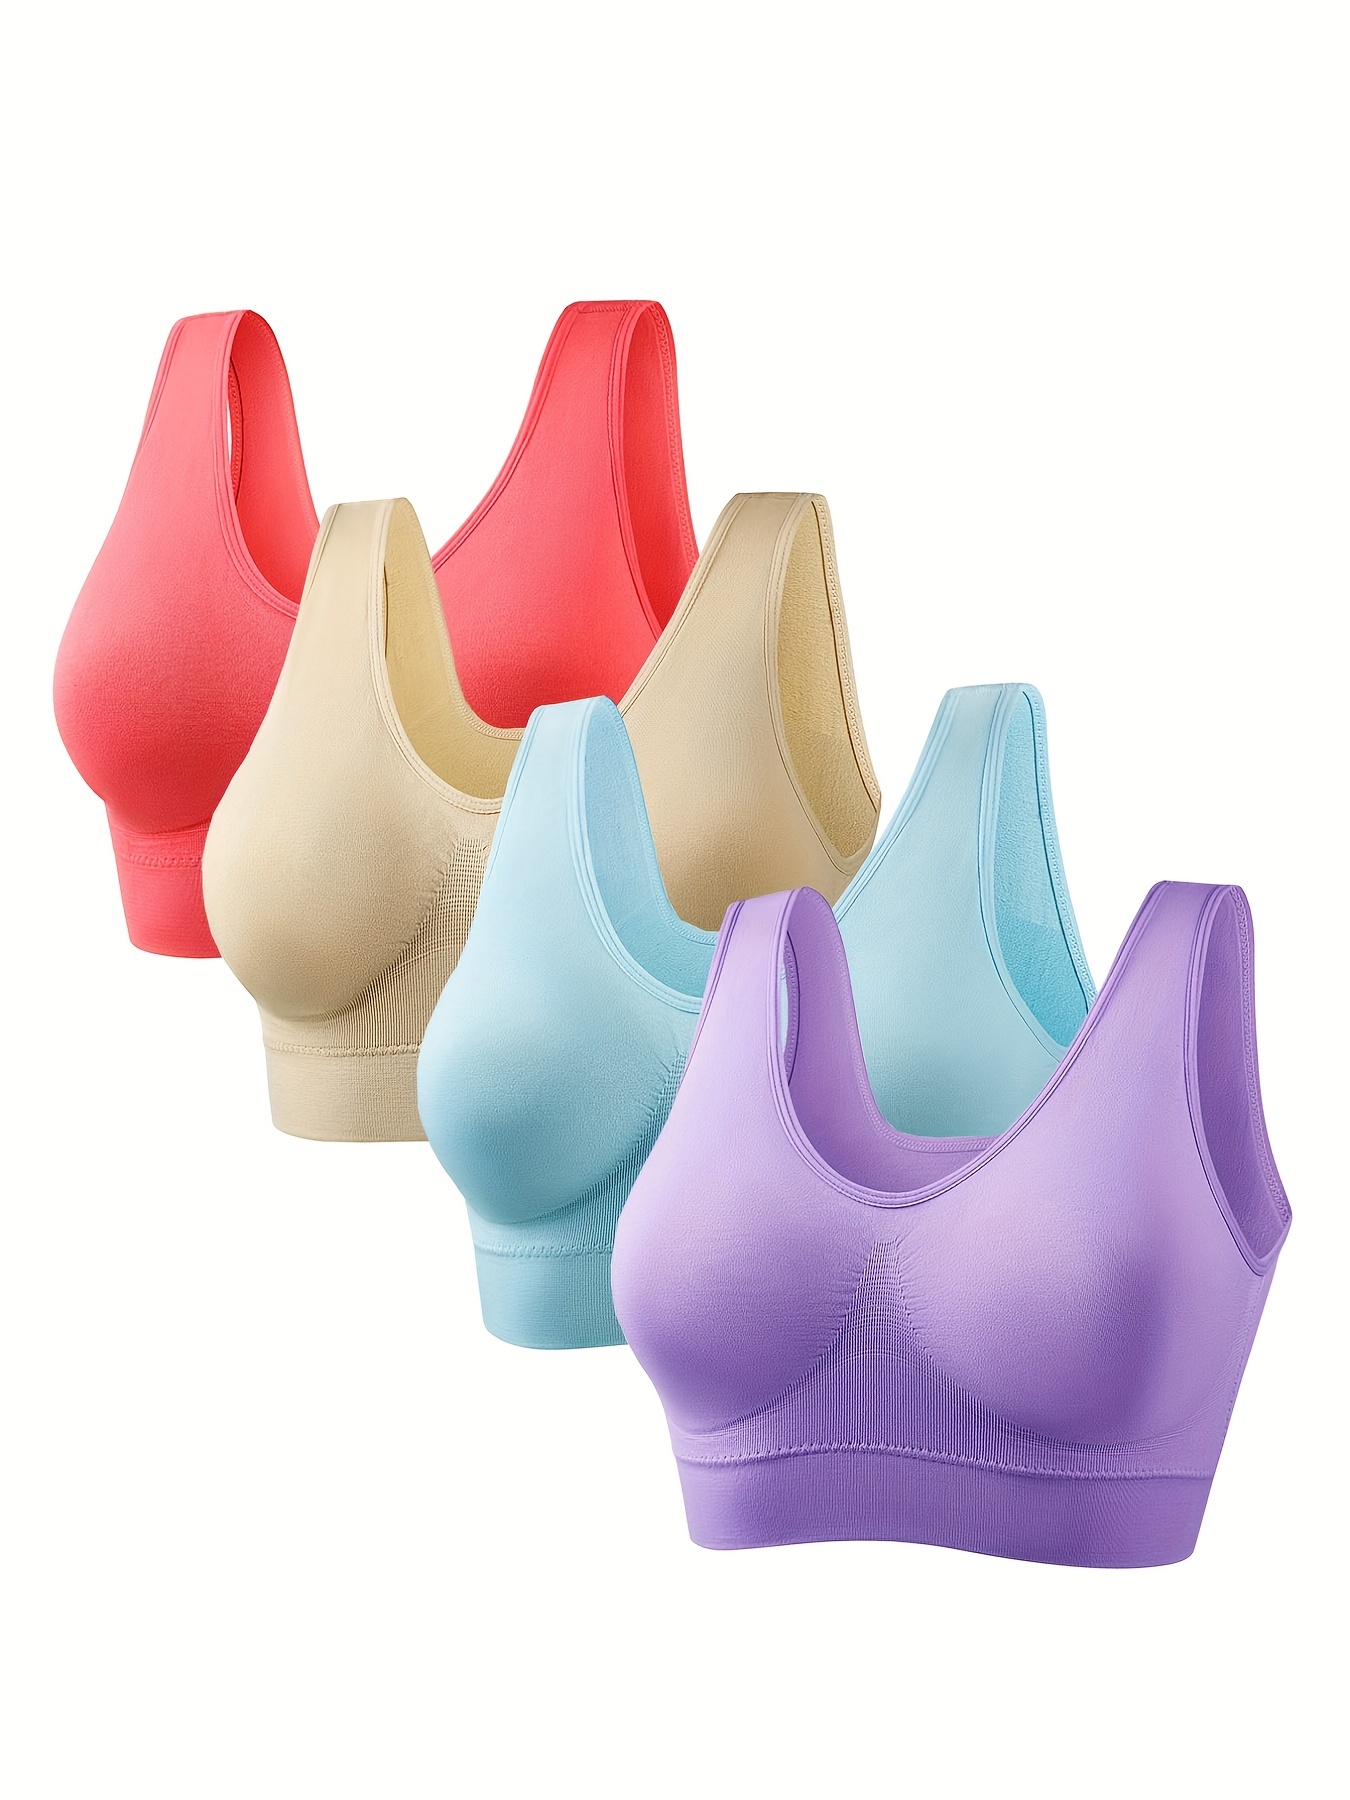 4pcs sports bras for girls Nylon Bras Comfortable Bras Girls Bras Sports  Bras